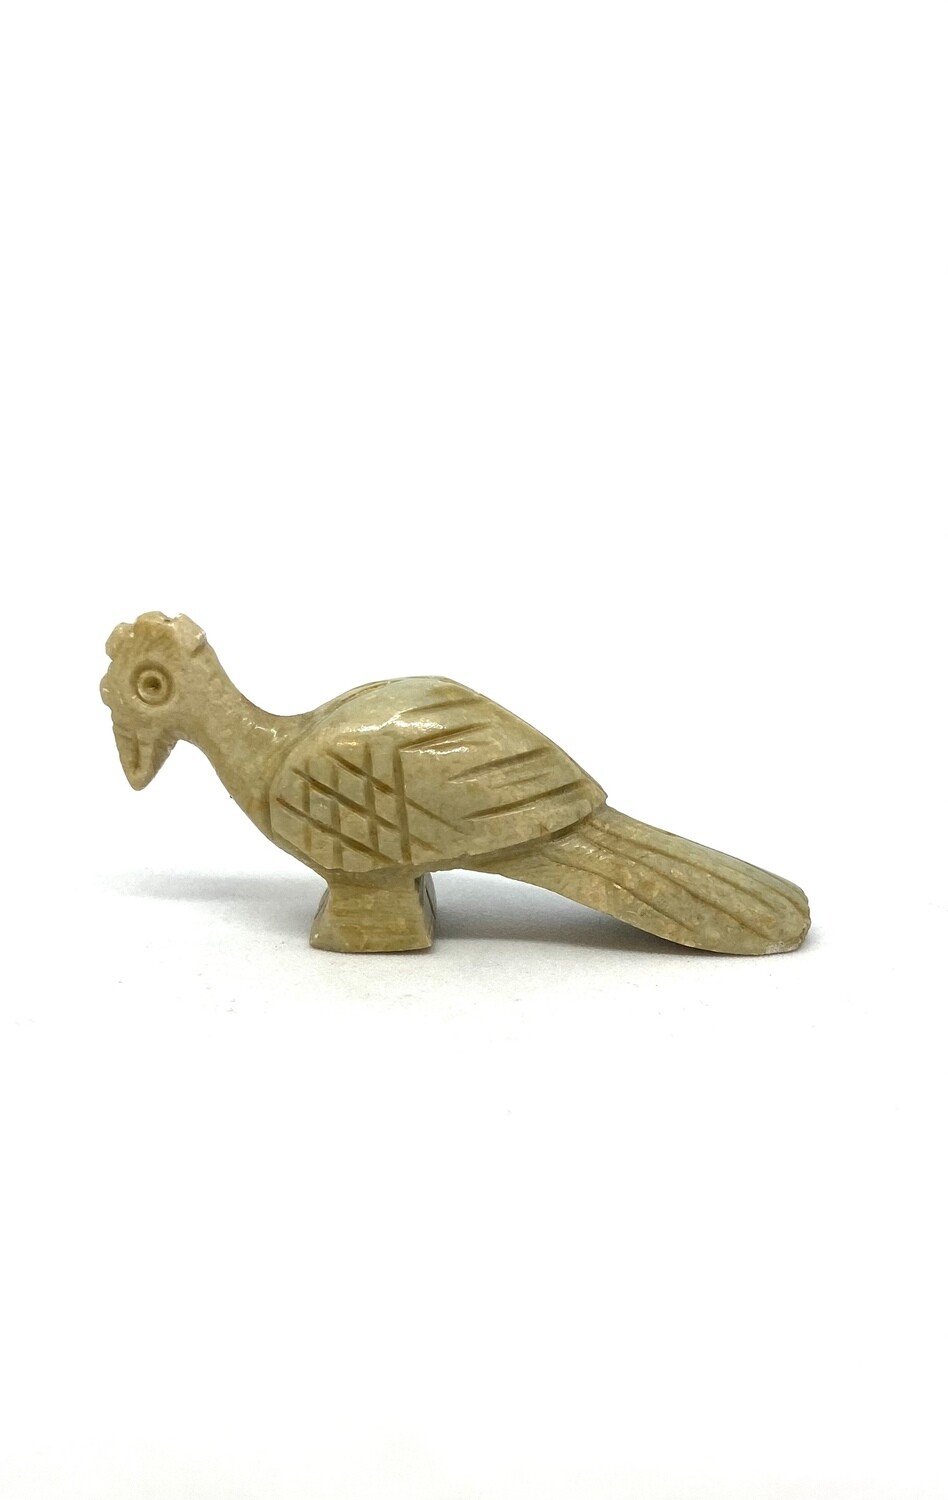 Carved Stone Bird Figurine 2”